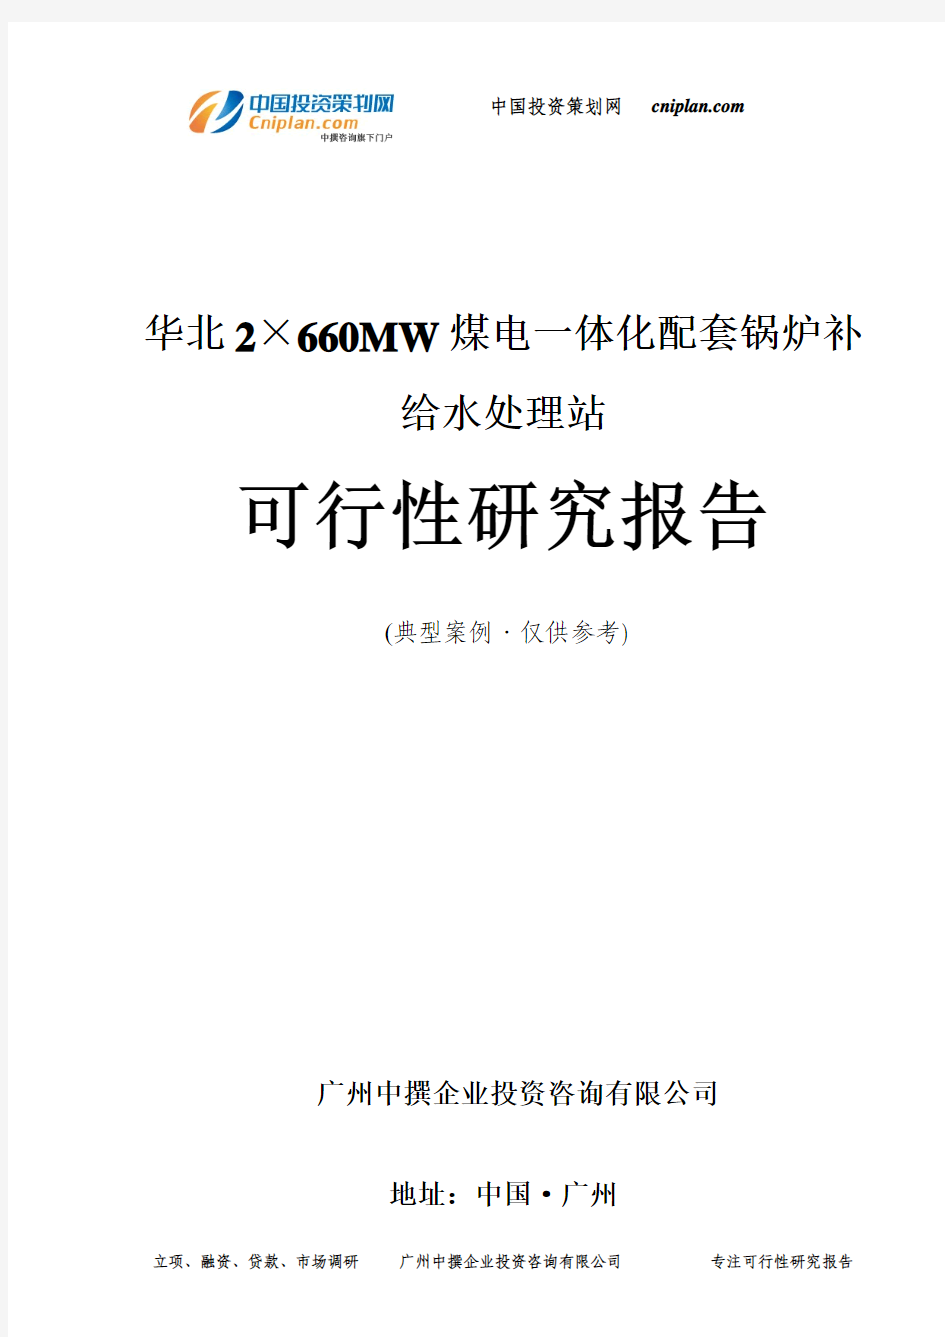 华北2×660MW煤电一体化配套锅炉补给水处理站可行性研究报告-广州中撰咨询